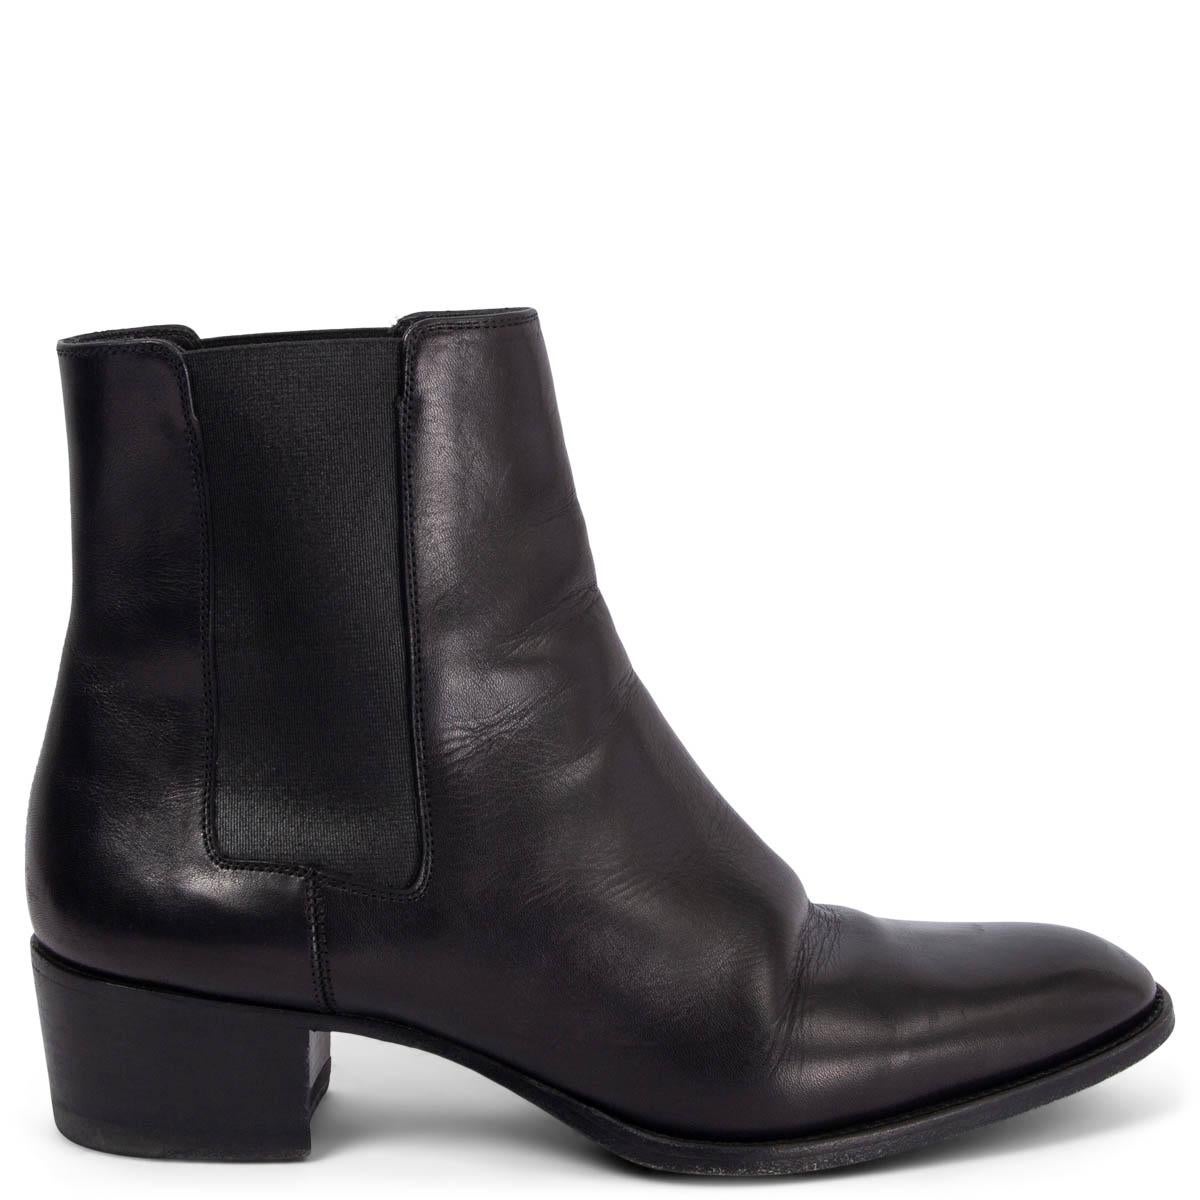 SAINT LAURENT black leather WYATT 40 Ankle Boots Shoes 38